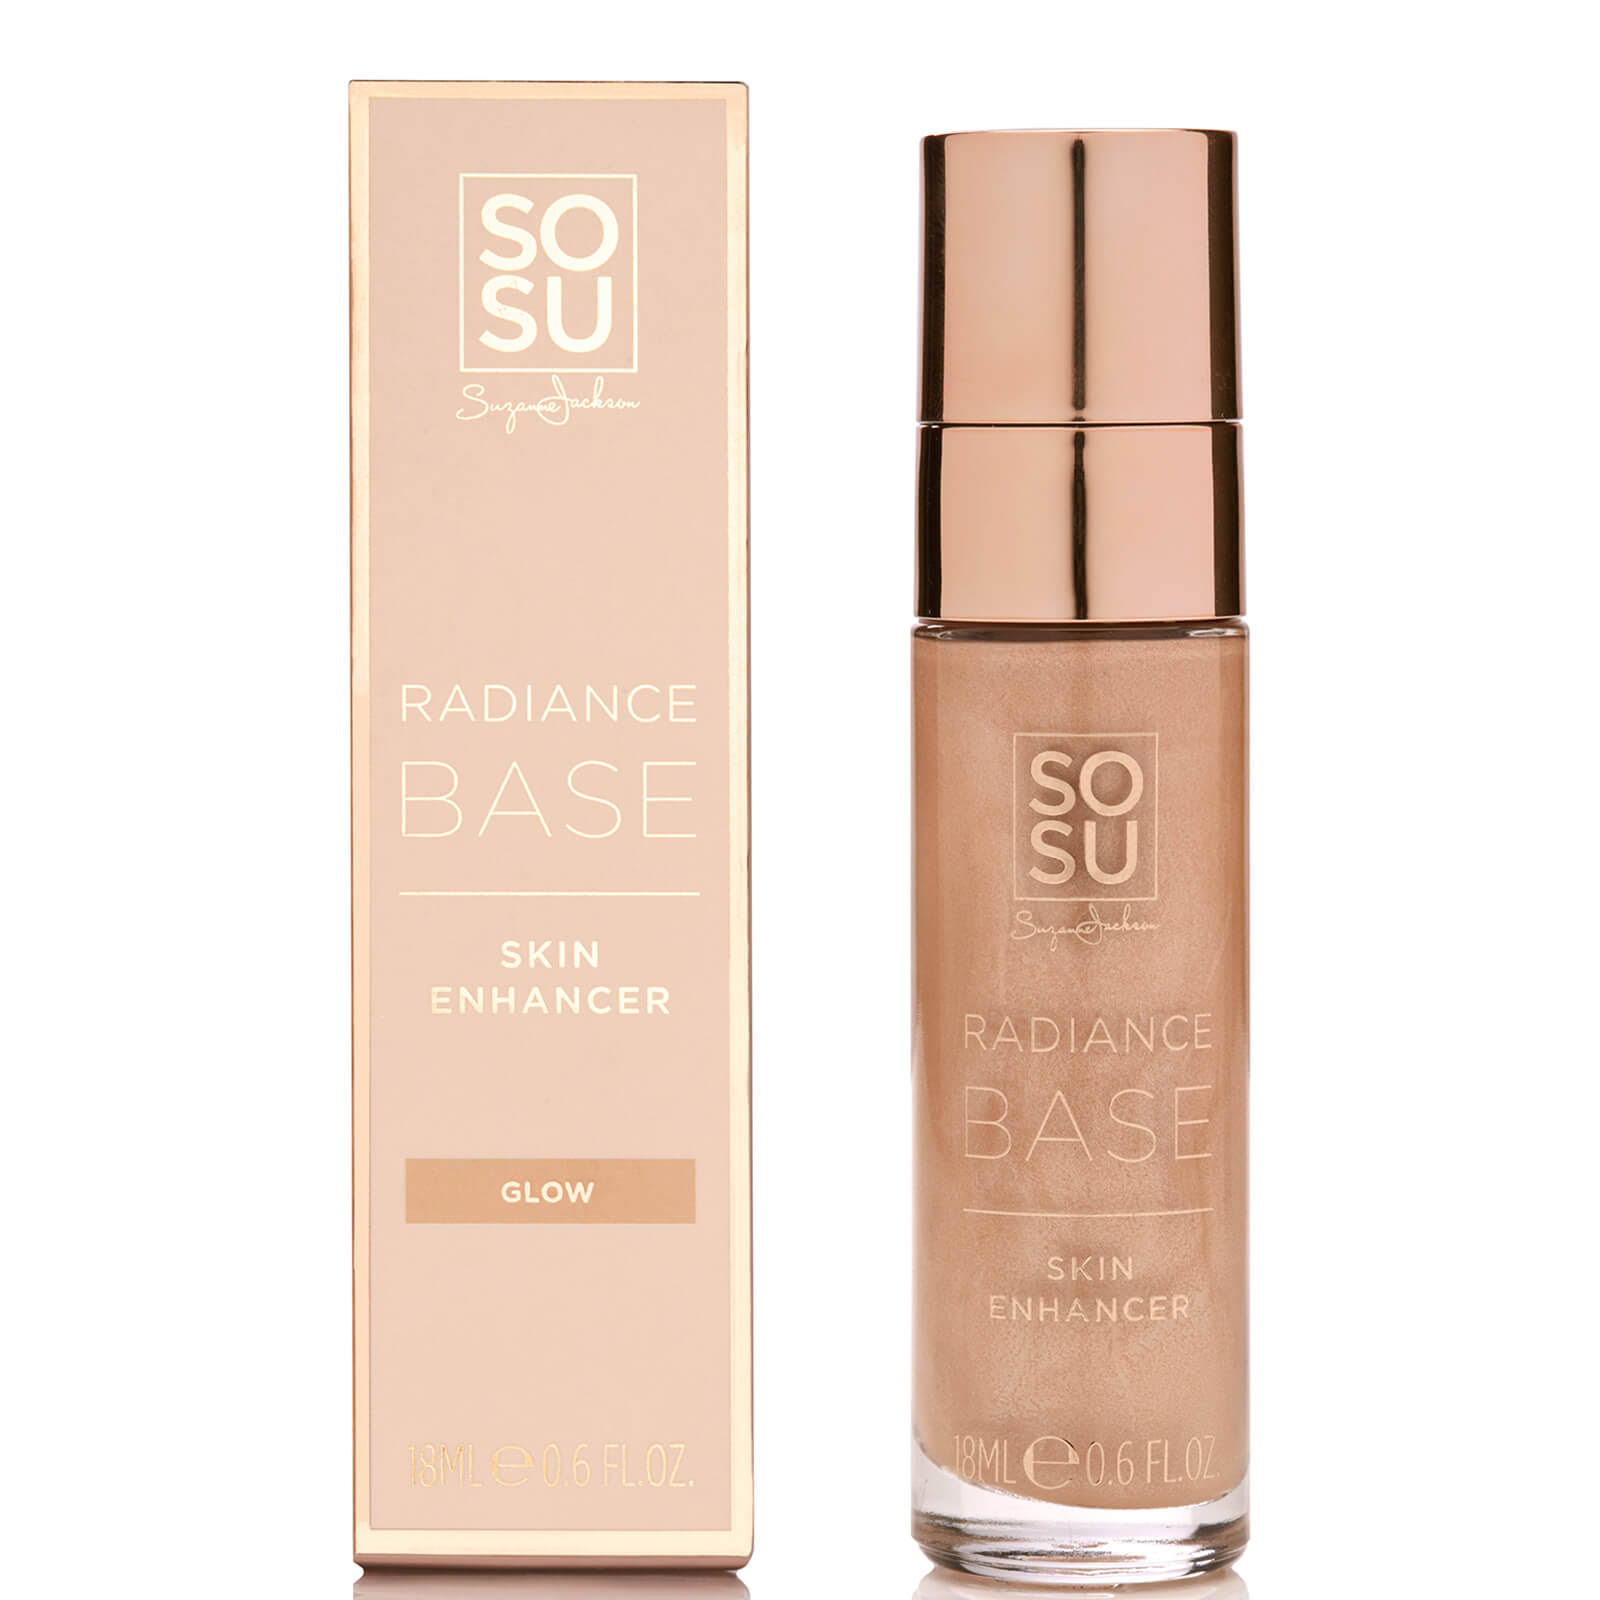 SOSU Cosmetics Radiance Base Skin Enhancer Glow